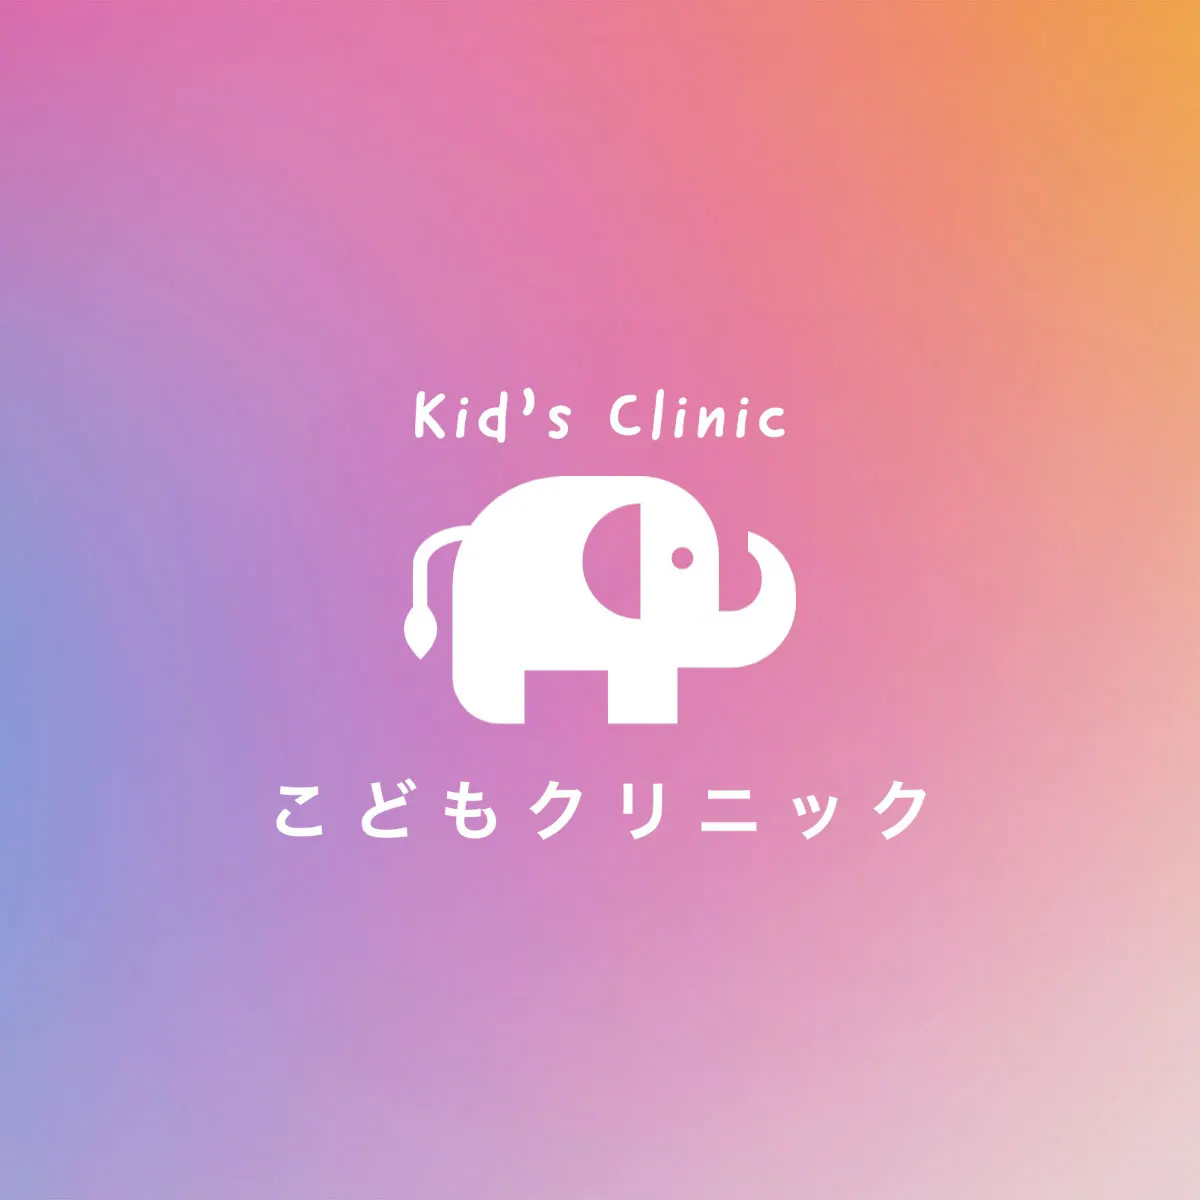 Pastel elephant clinic logo